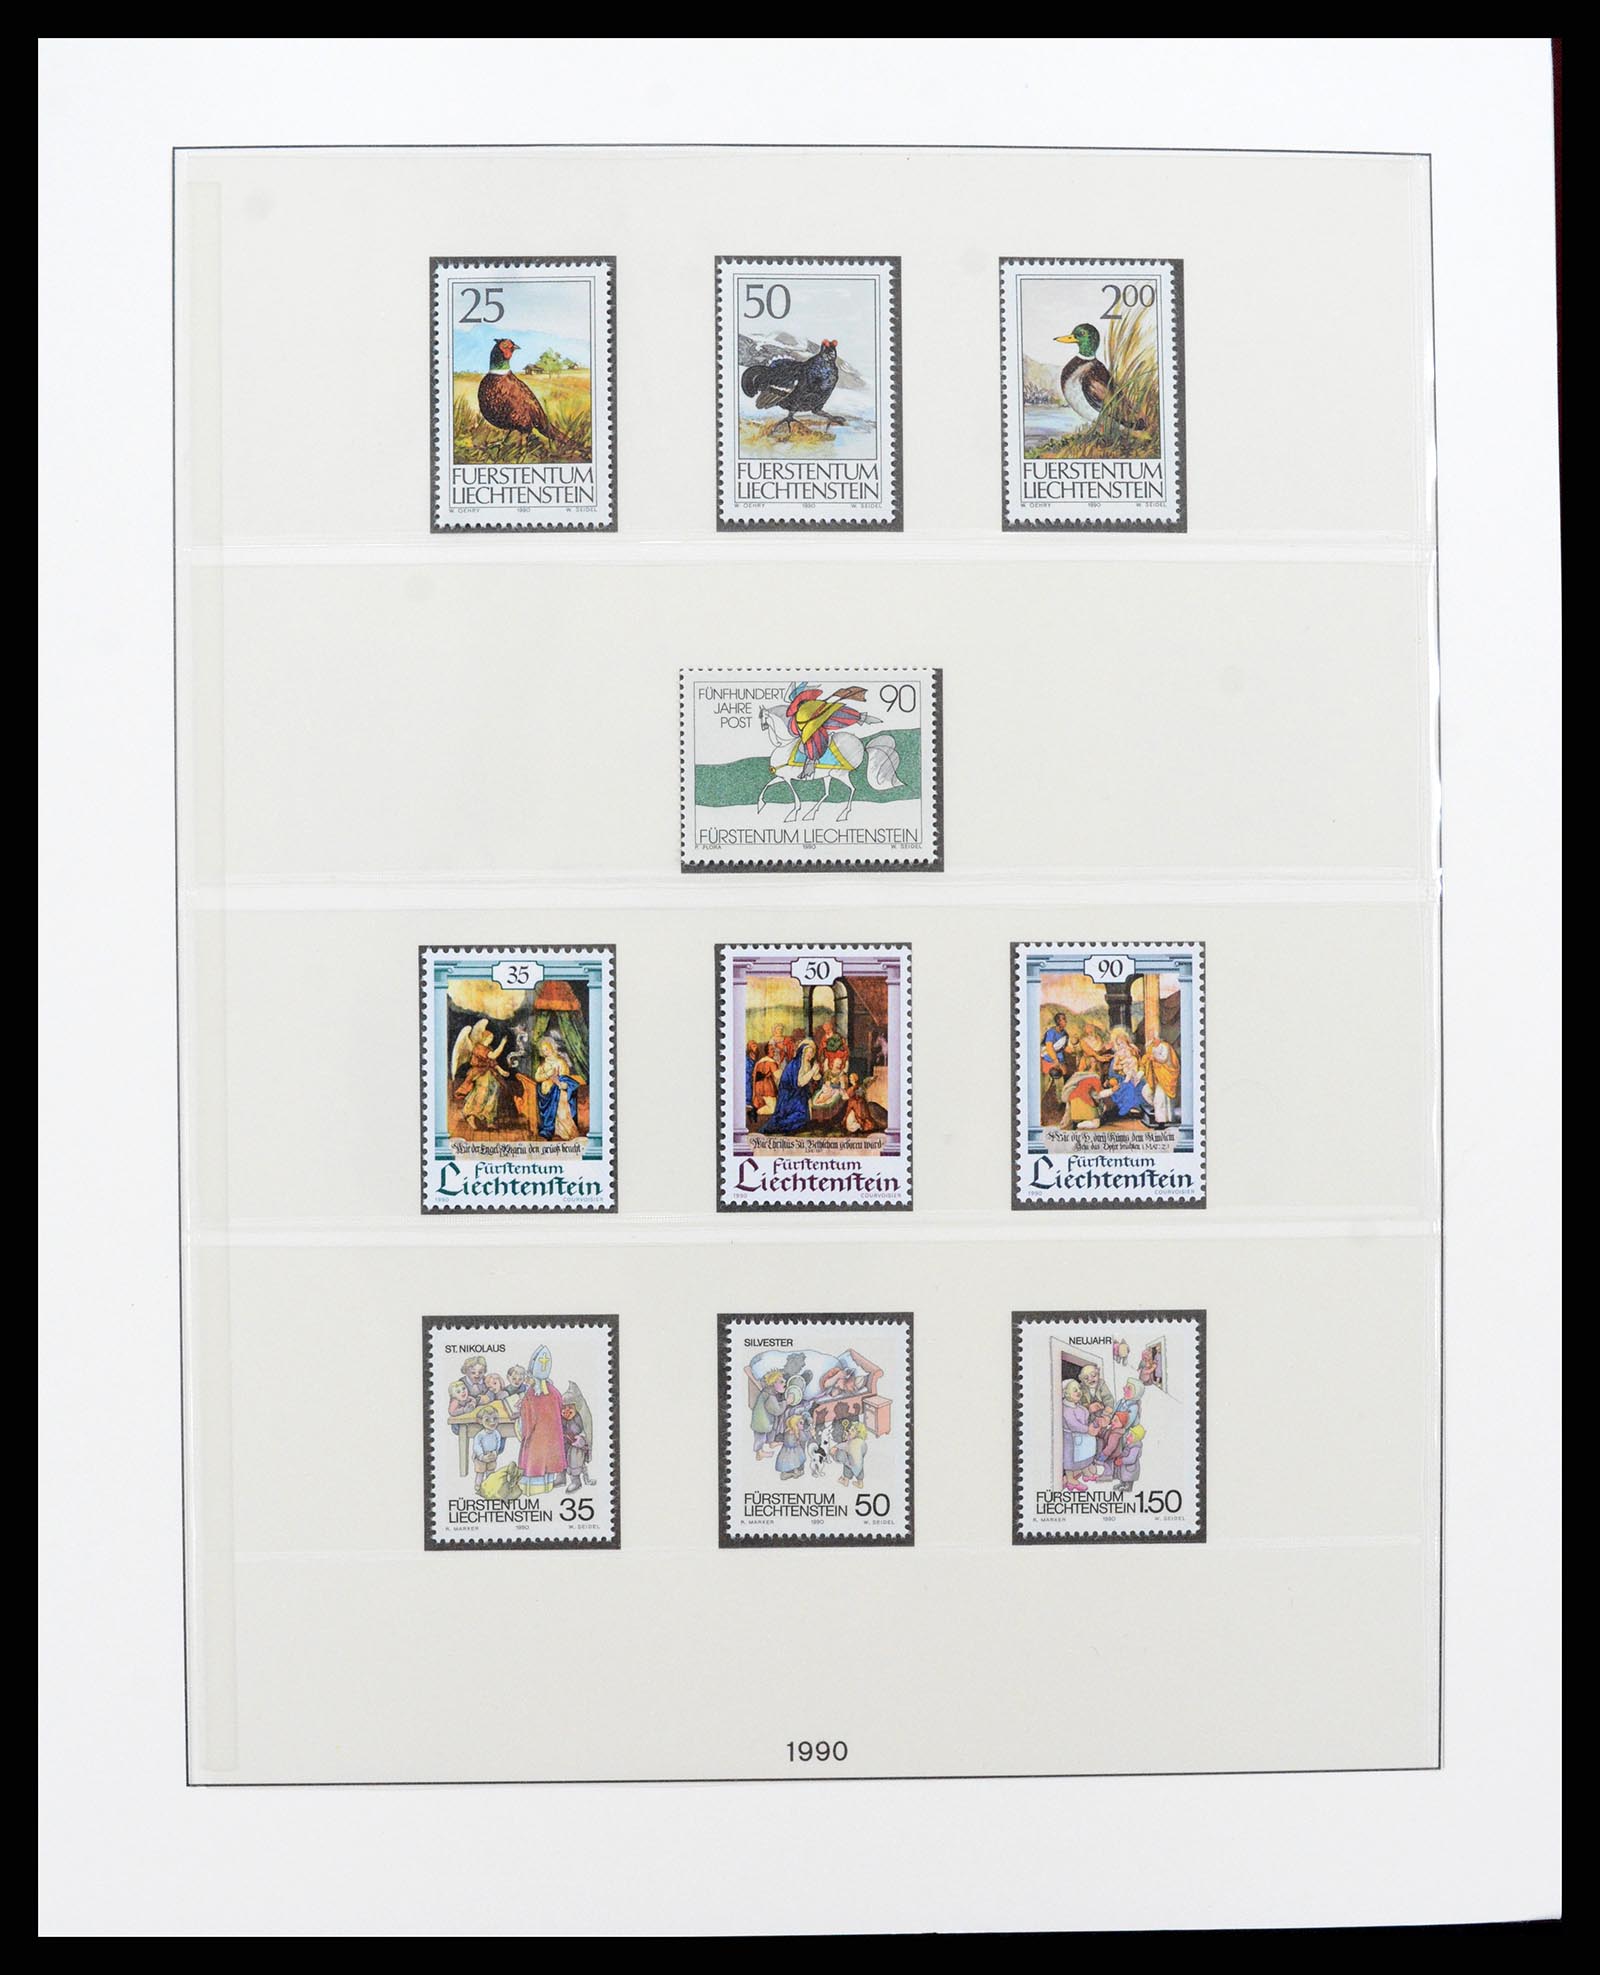 37293 125 - Stamp collection 37293 Liechtenstein 1912-2003.